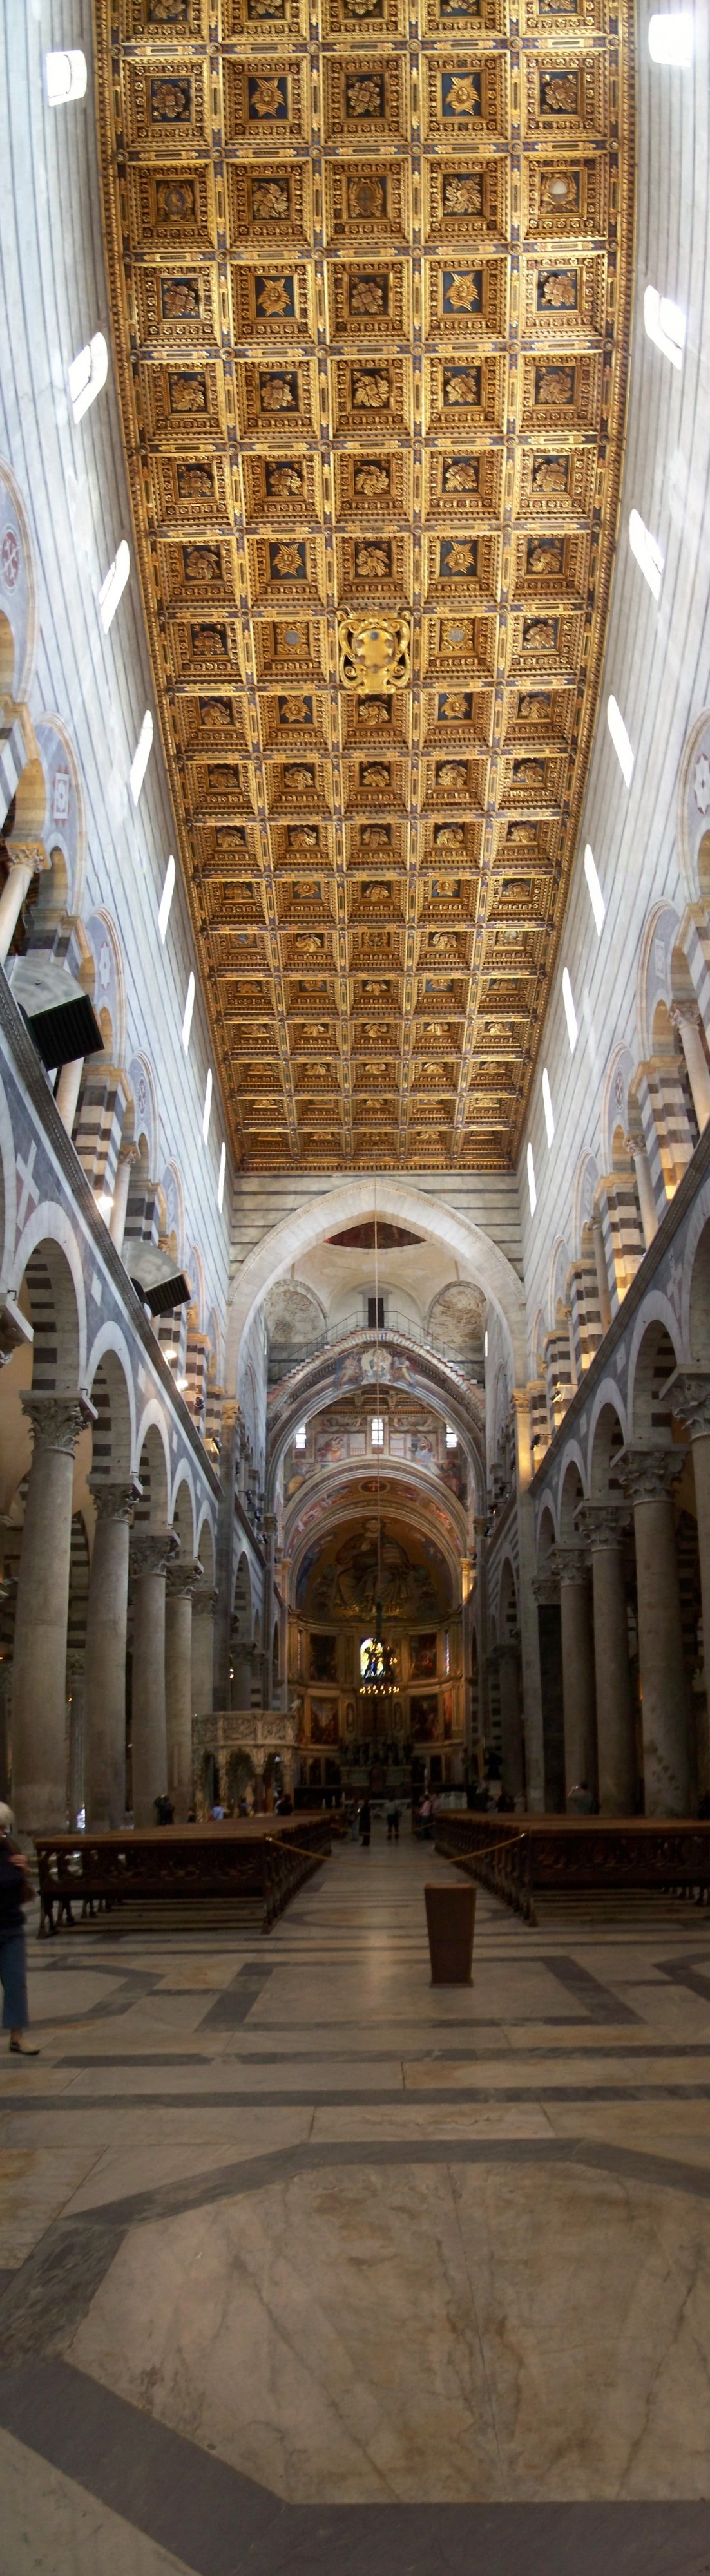 Interior of Pisa duomo